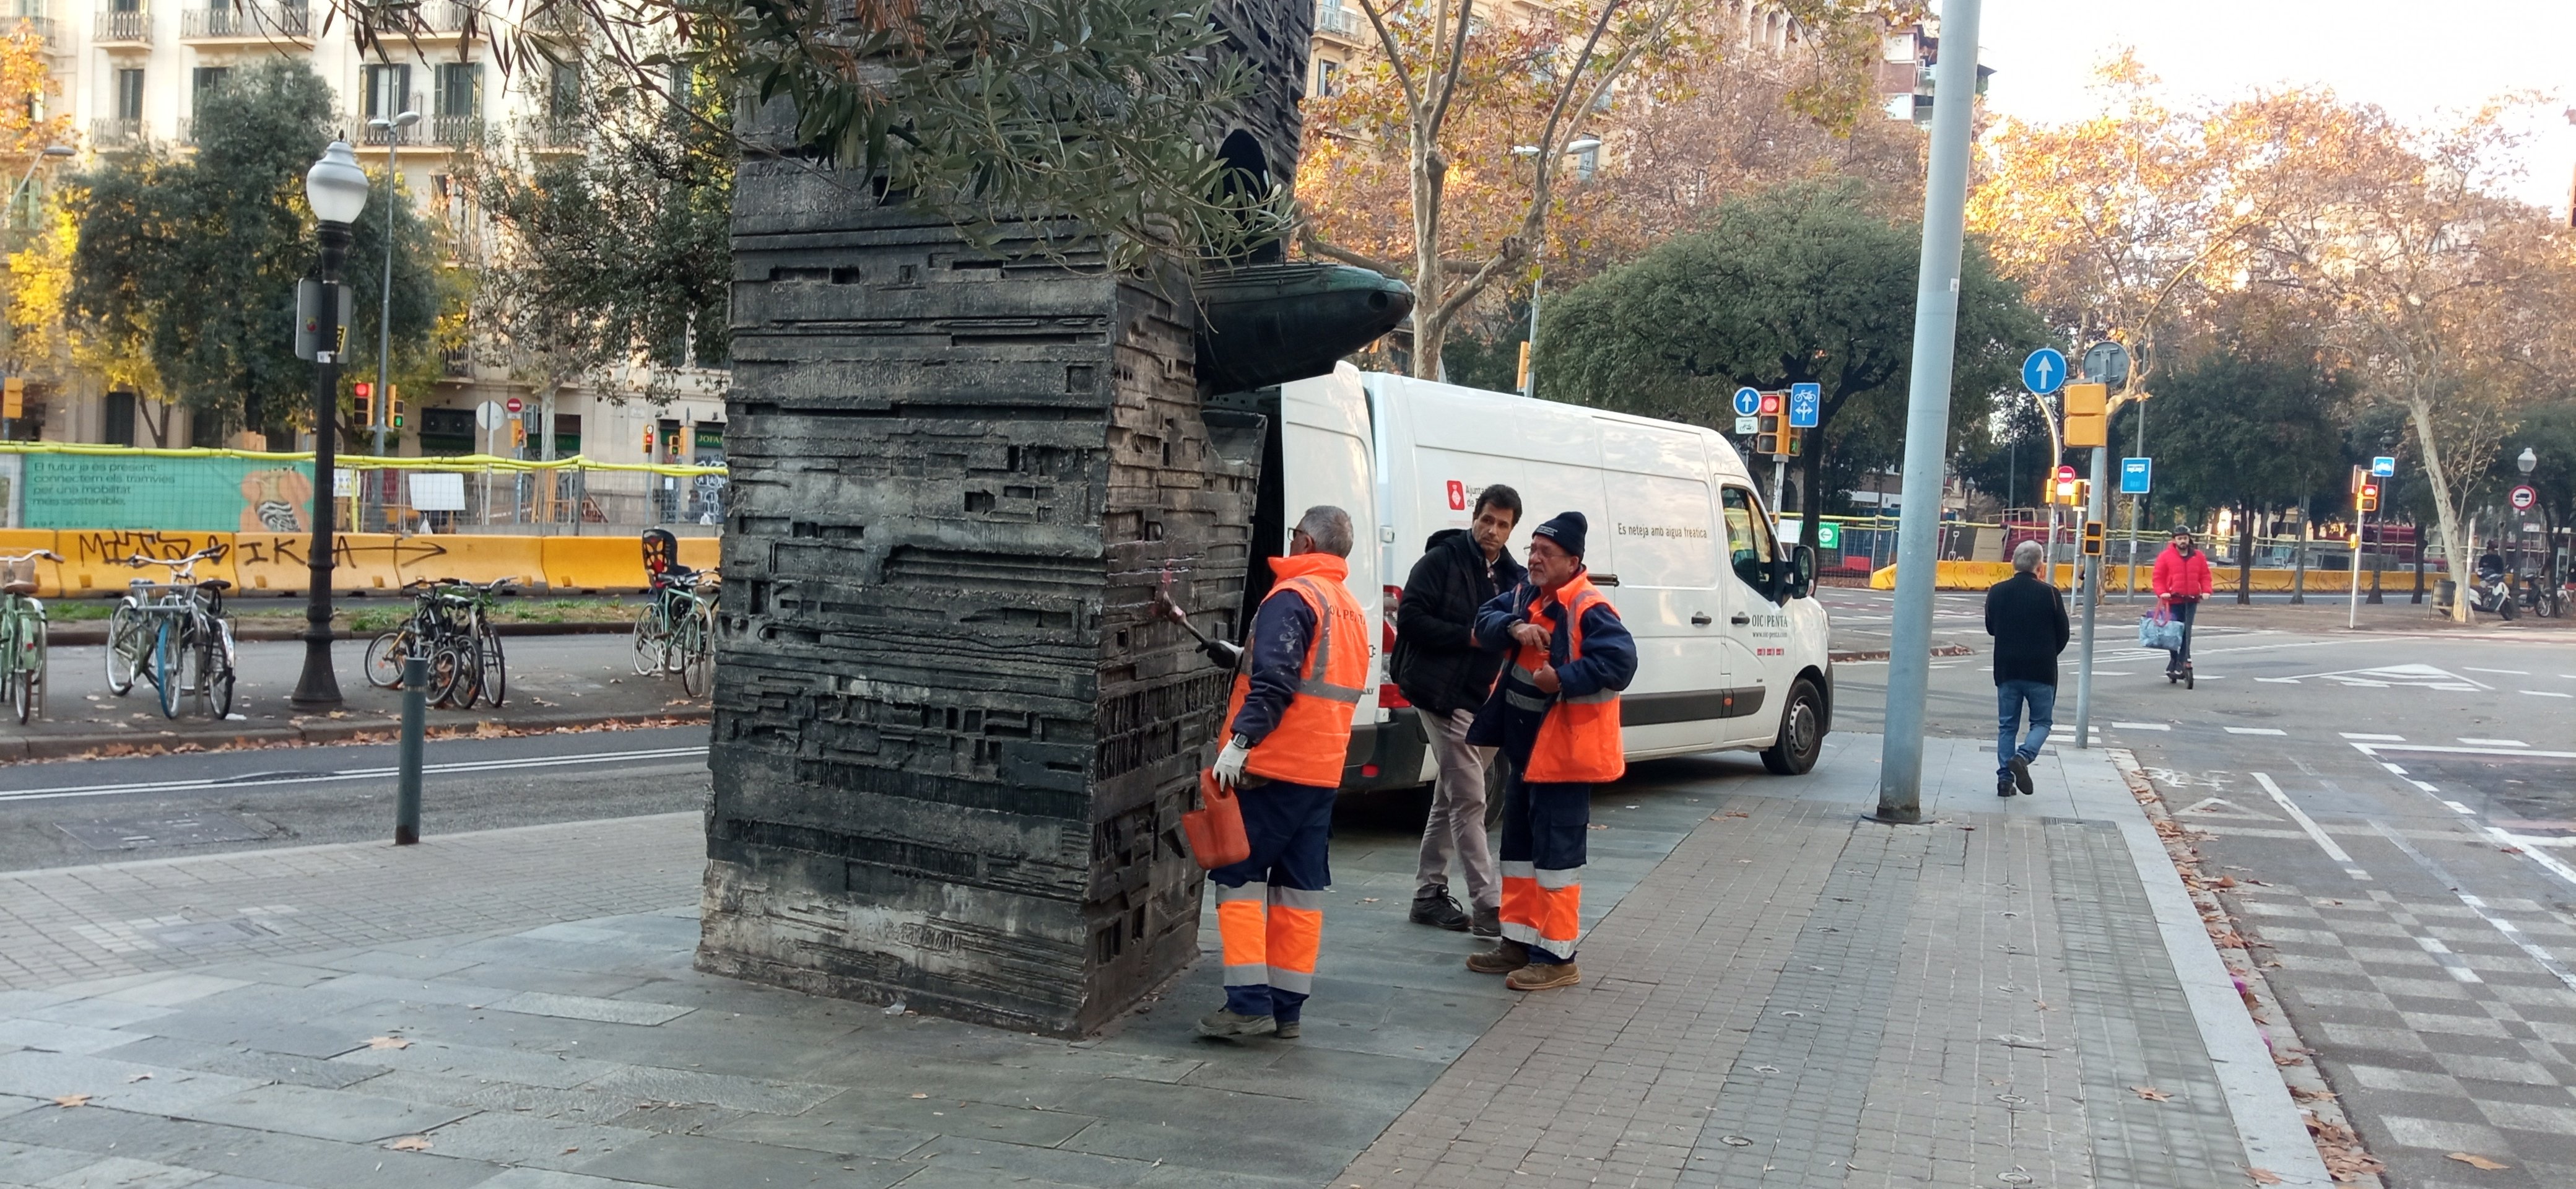 L’Ajuntament de Barcelona comença a ‘desvandalitzar’ el monument de Subirachs a Monturiol